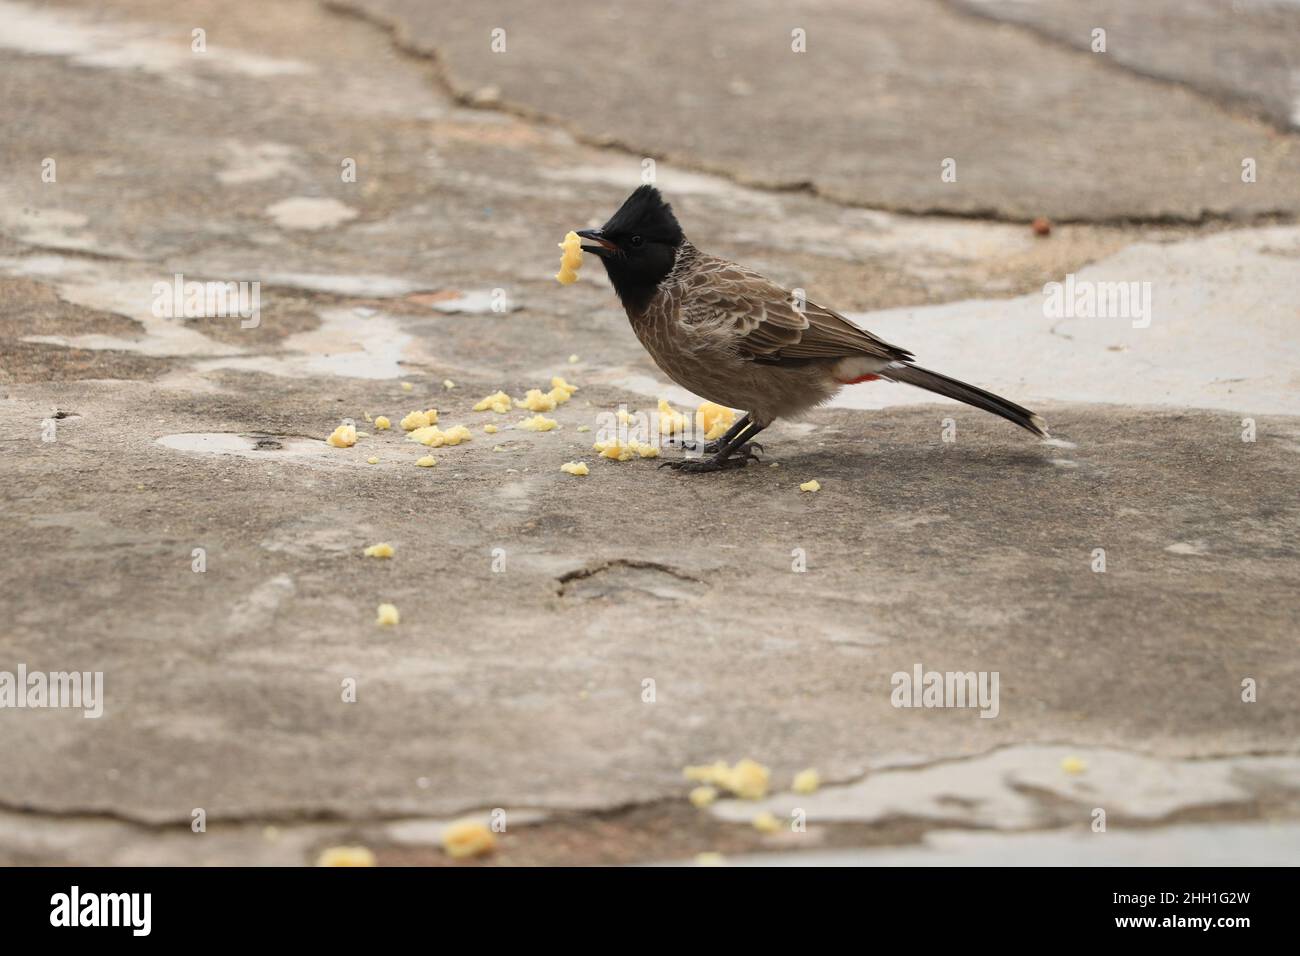 bulbul uccello seduto sul pavimento e mangiare dolce. Foto Stock